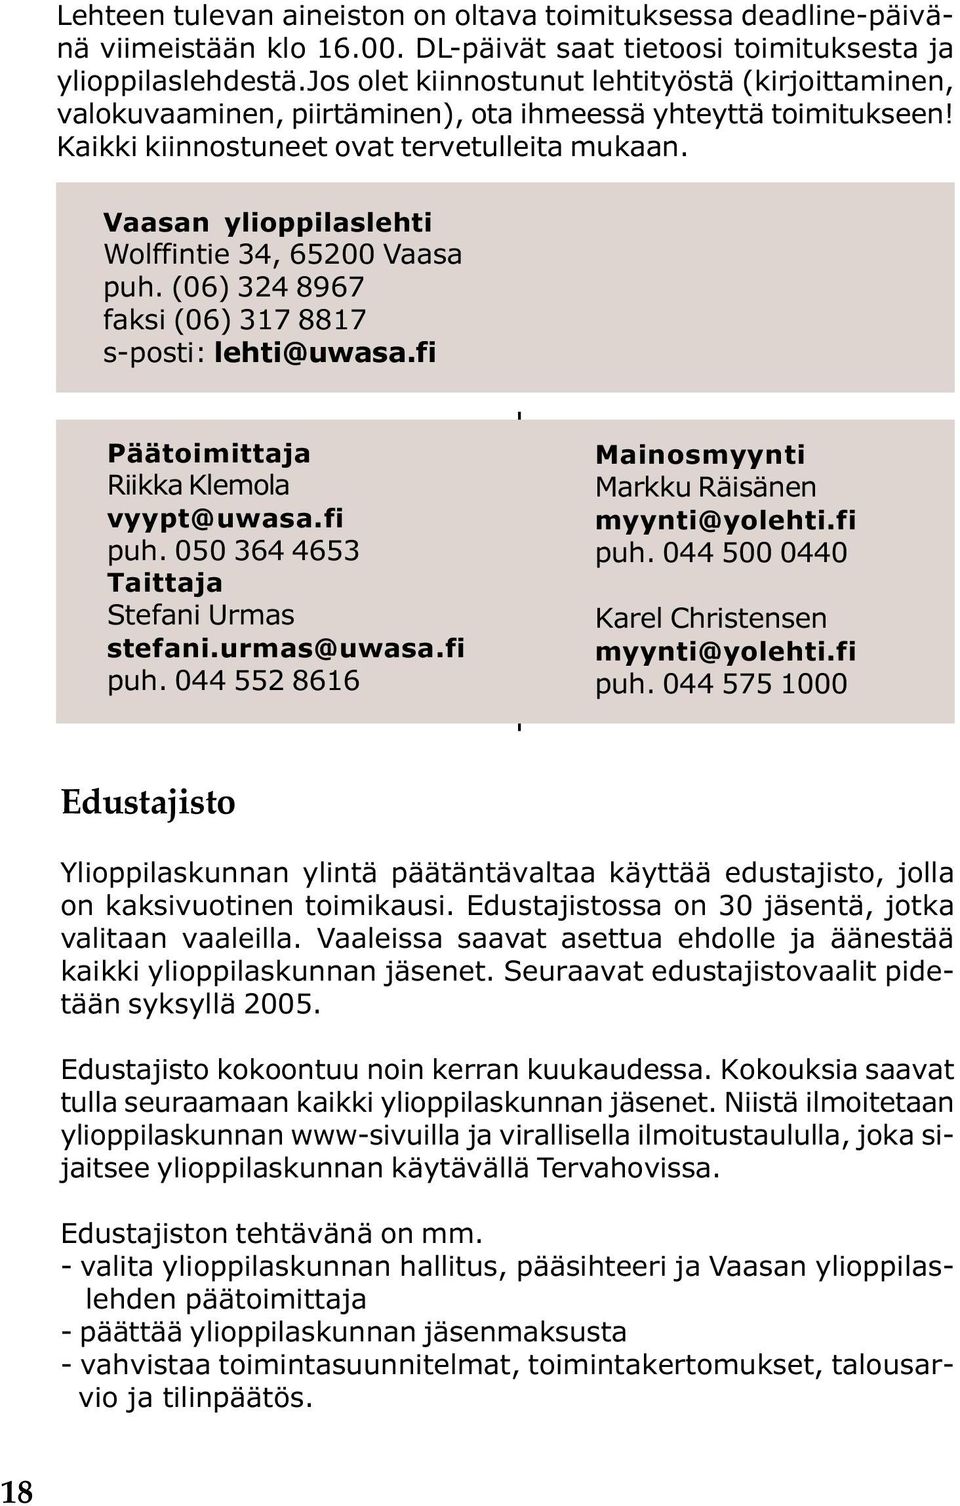 Vaasan ylioppilaslehti Wolffintie 34, 65200 Vaasa puh. (06) 324 8967 faksi (06) 317 8817 s-posti: lehti@uwasa.fi Päätoimittaja Riikka Klemola vyypt@uwasa.fi puh.